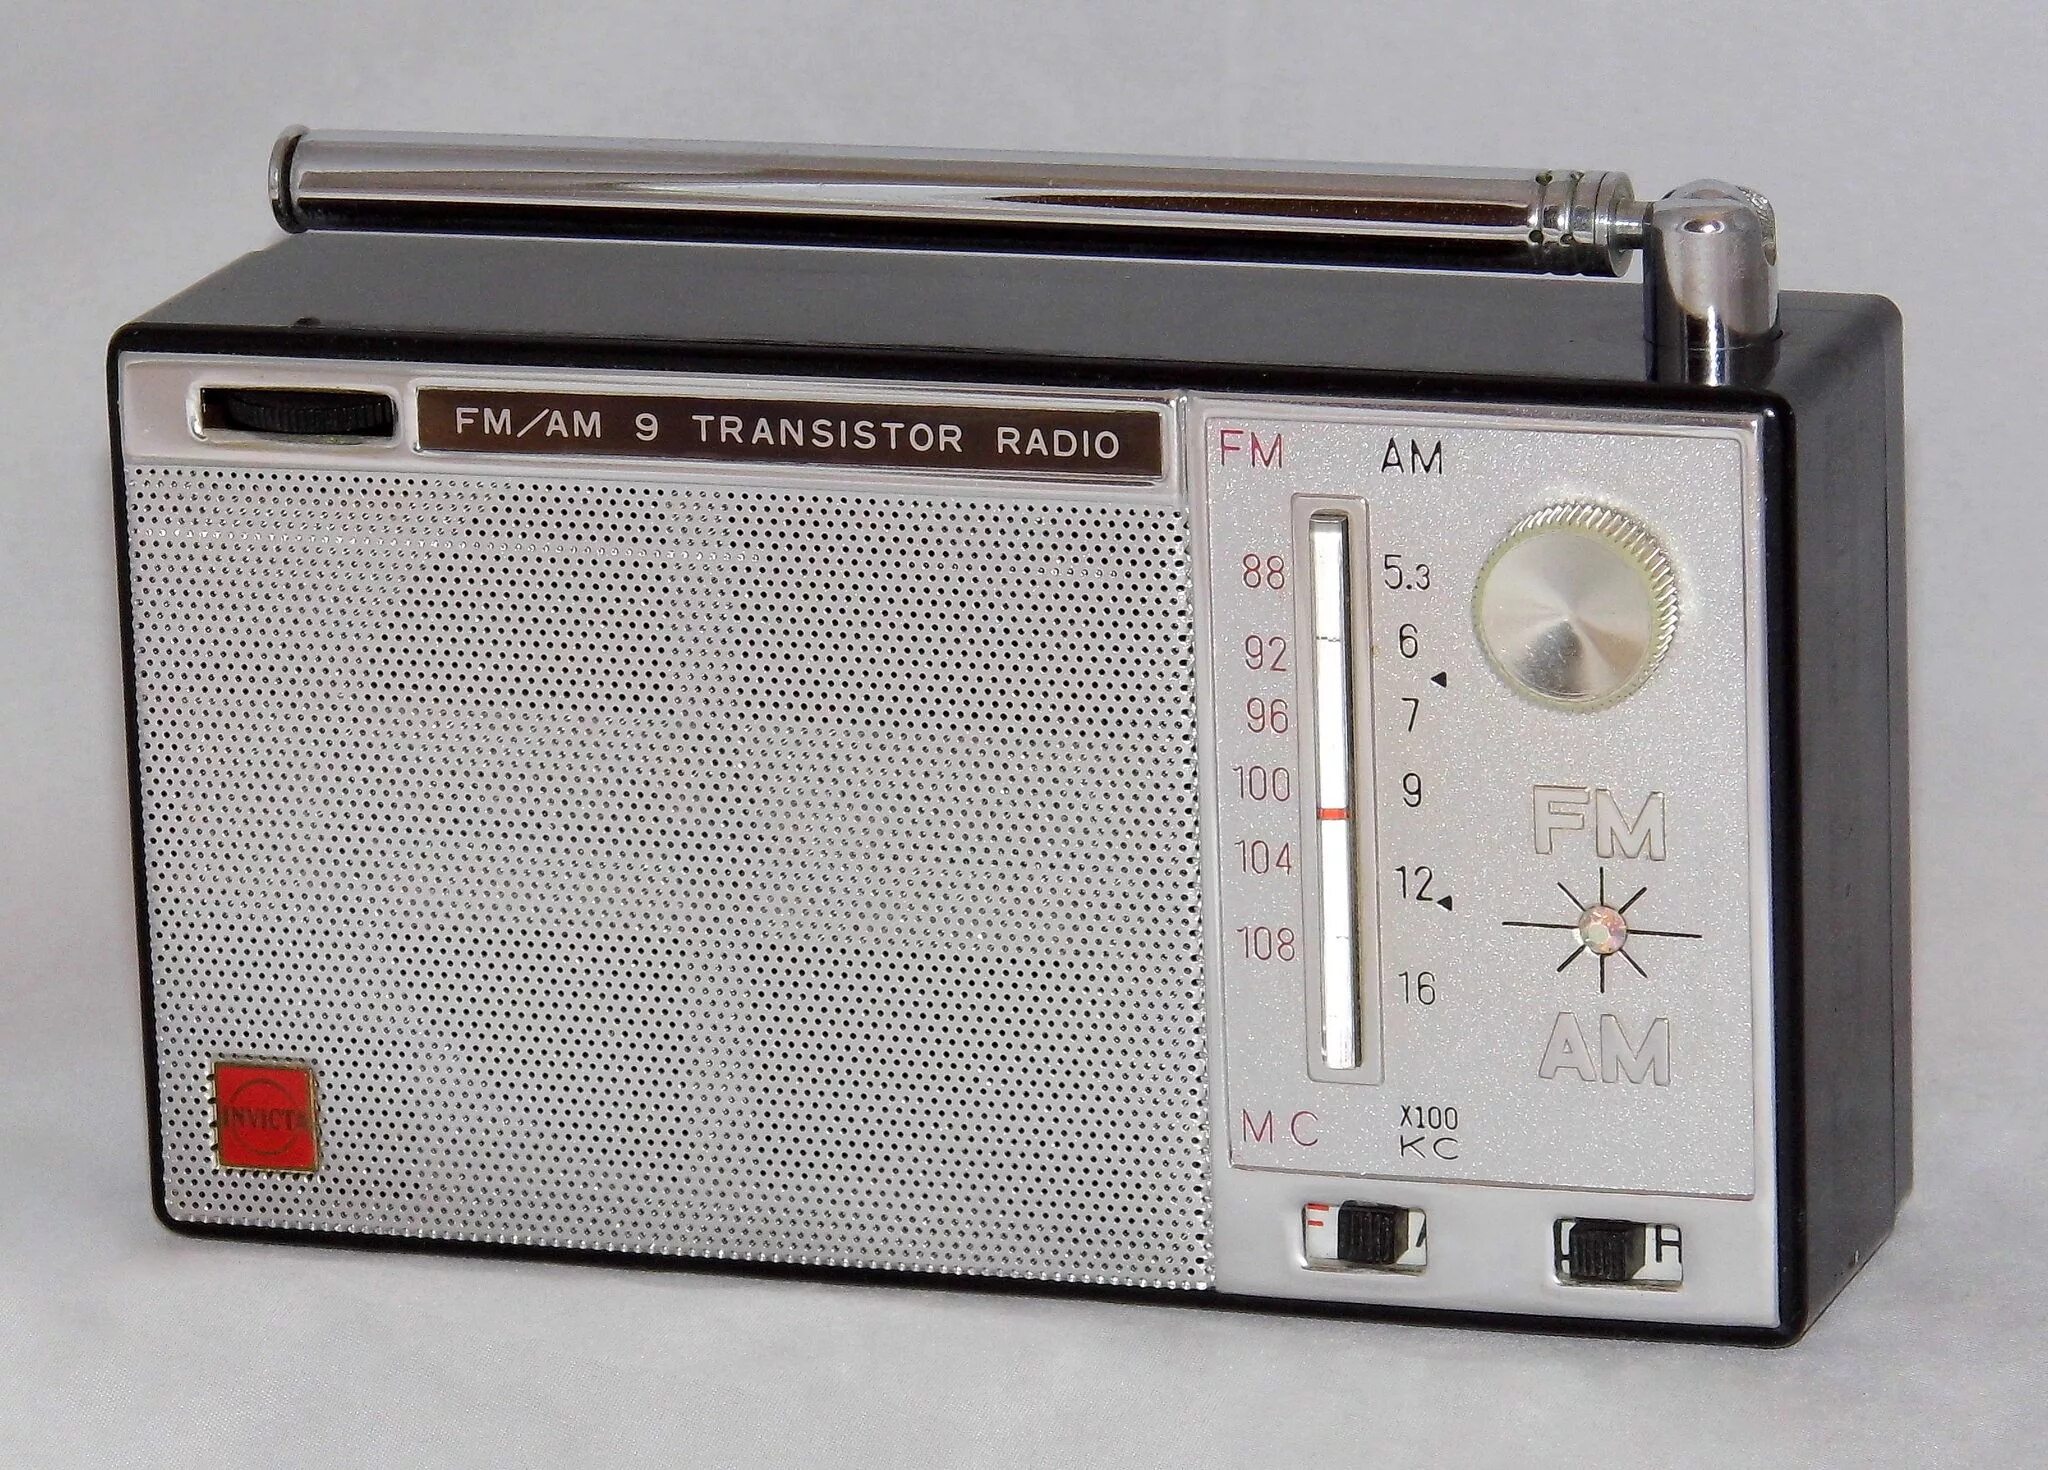 Радиоприемник Imperial 7 Transistor. Радиоприемник феб Советский. Однопрограммный радиоприемник 9в. Transistor Radio. Radio model